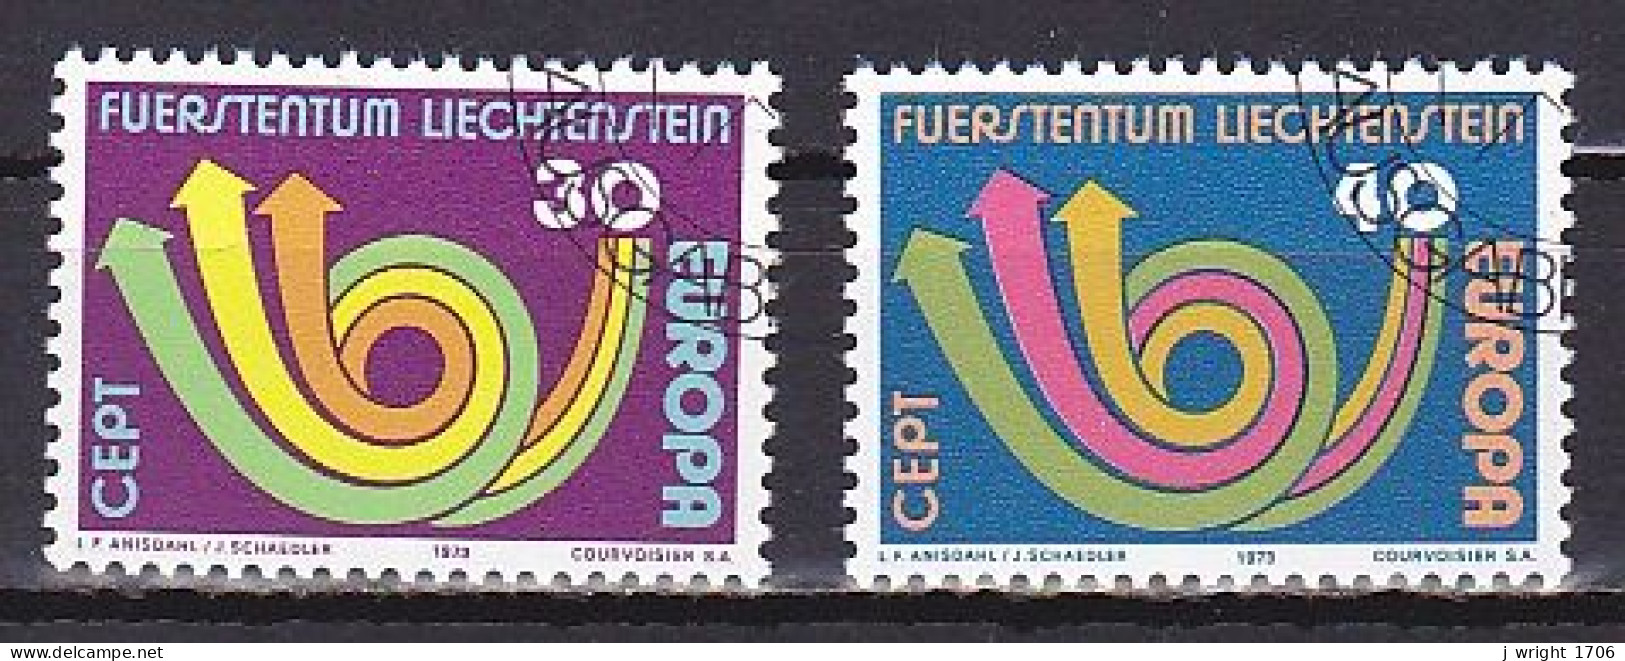 Liechtenstein, 1973, Europa CEPT, Set, CTO - Oblitérés